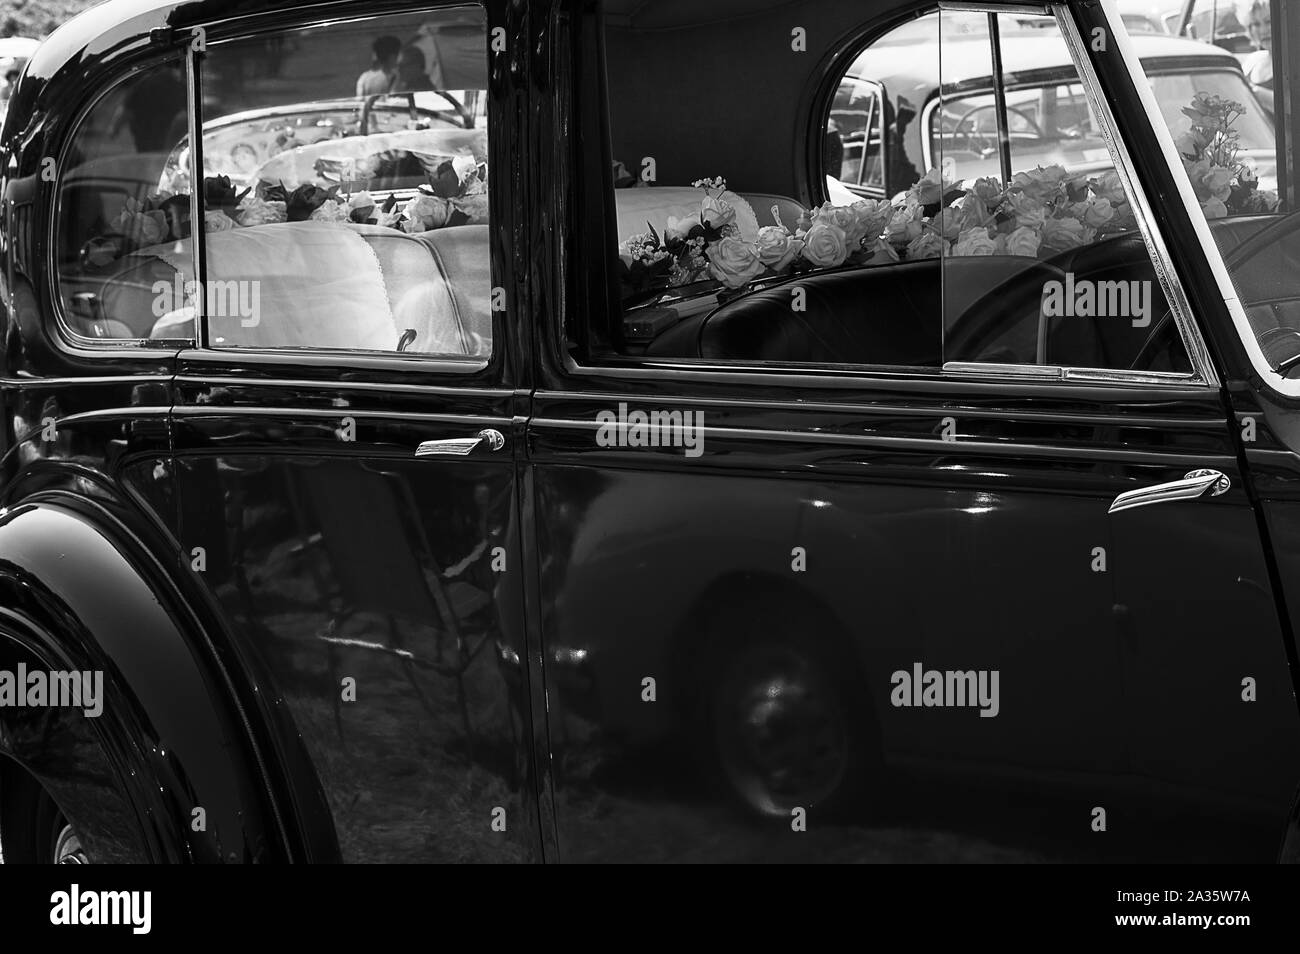 Le côté d'une voiture de mariage Rolls Royce vintage sur l'affichage à une exposition de voiture Banque D'Images